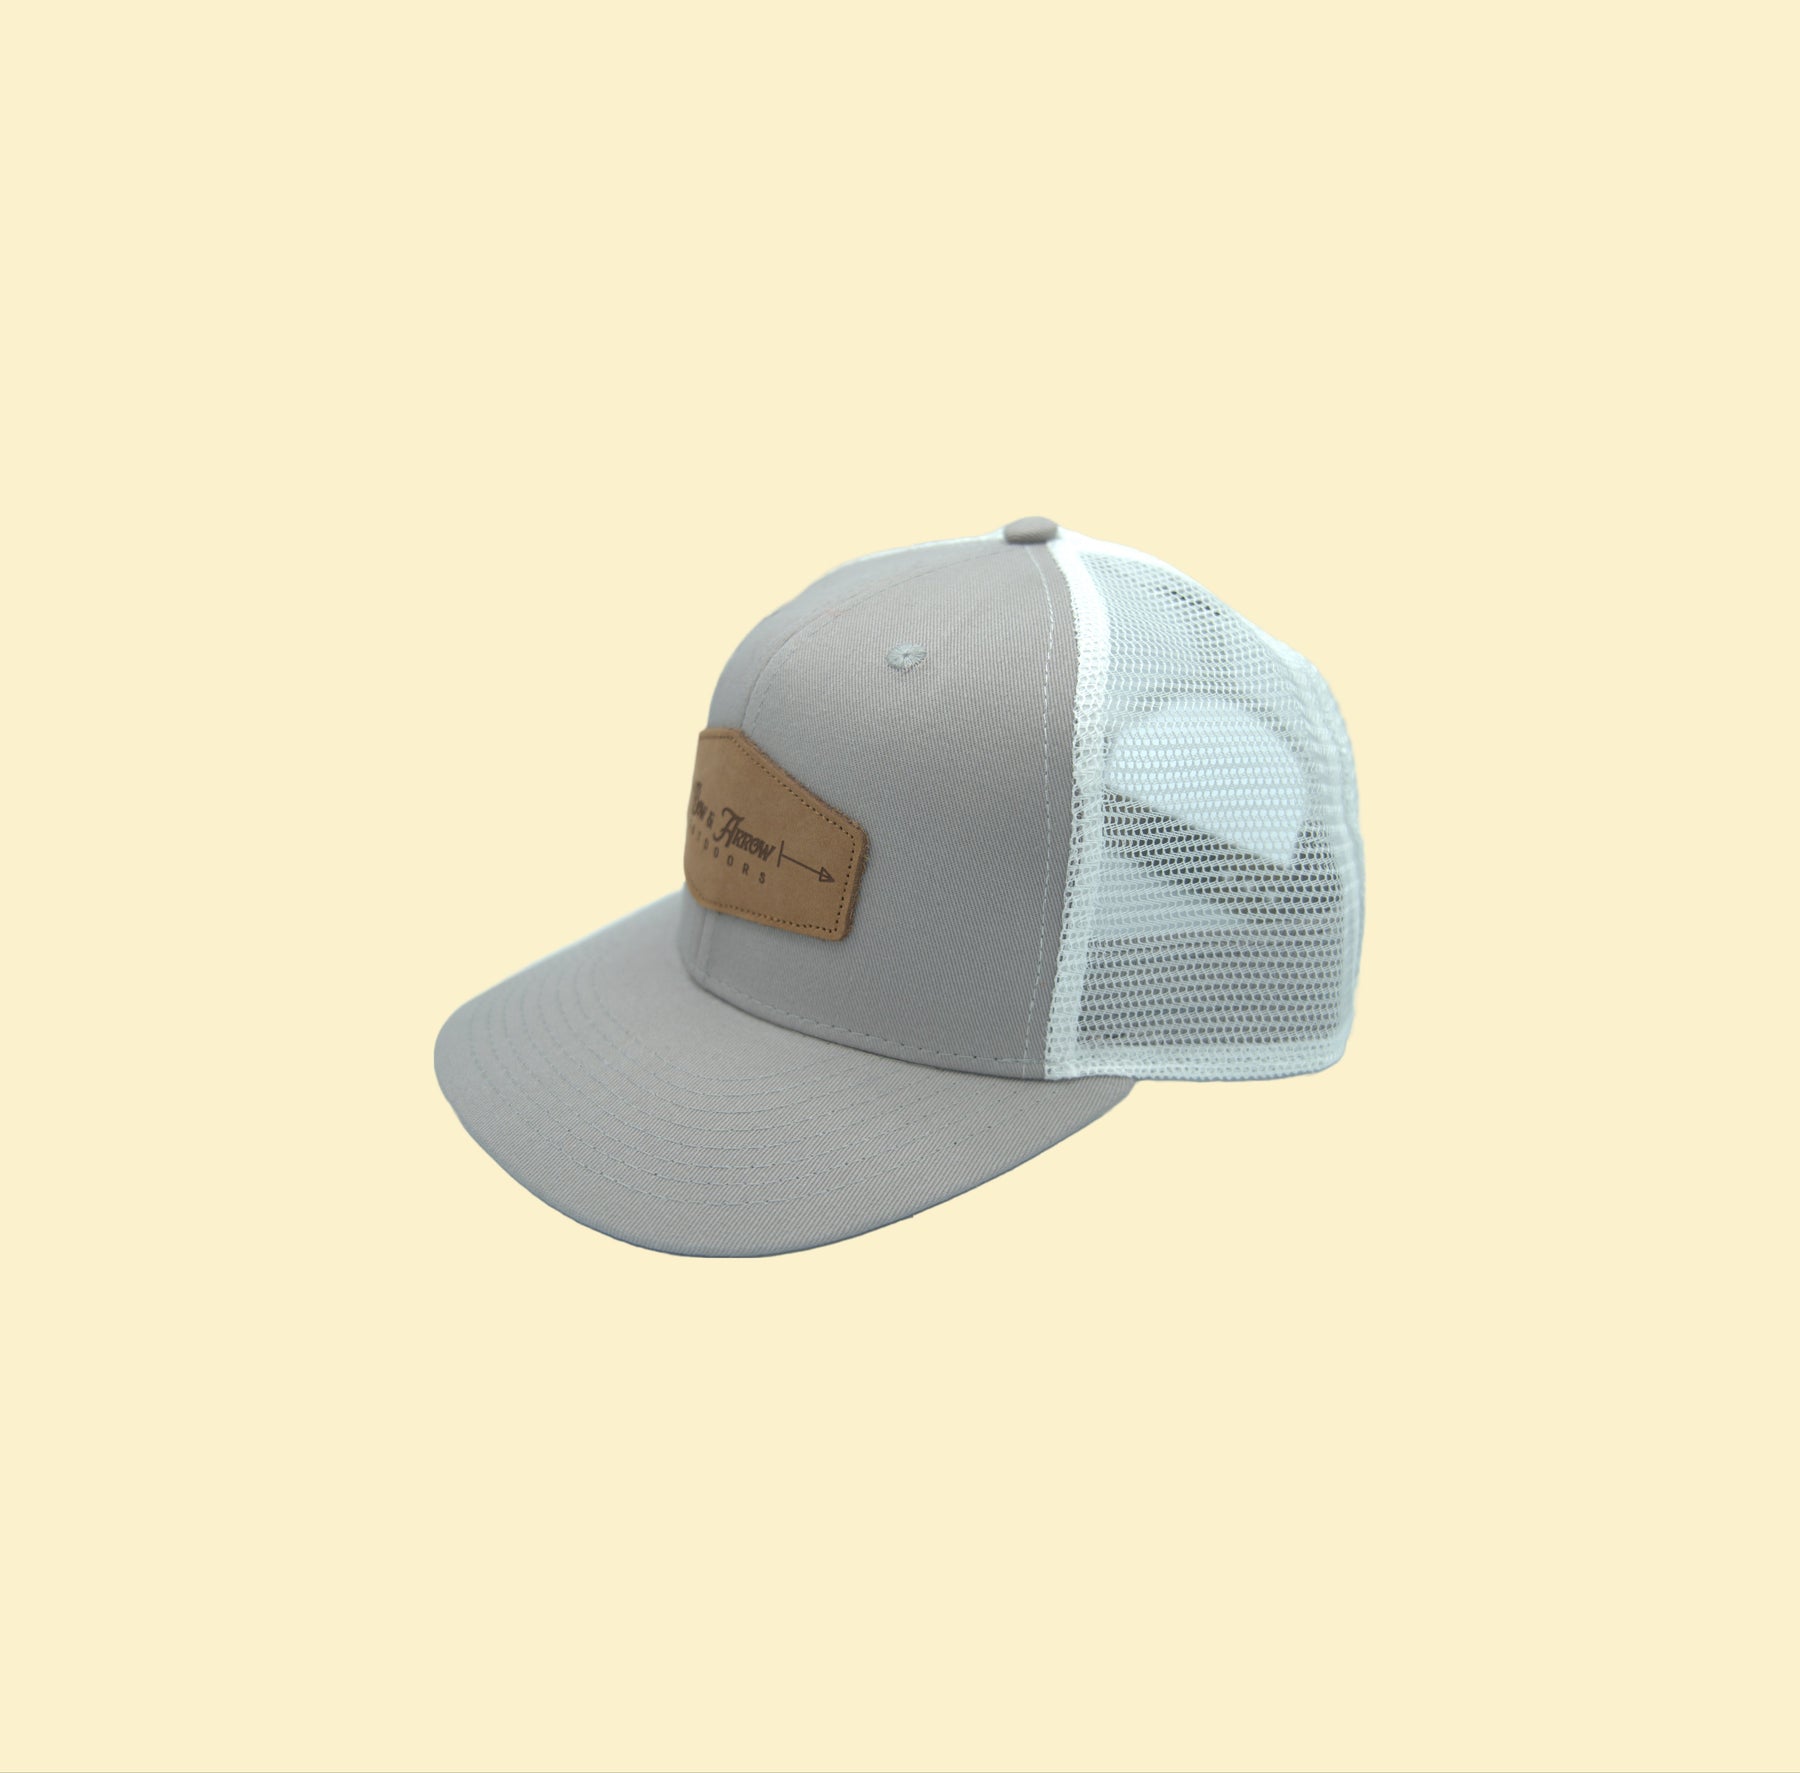 Trucker Logo Snapback Hat by Bow and Arrow Outdoors - Sportsman Gear